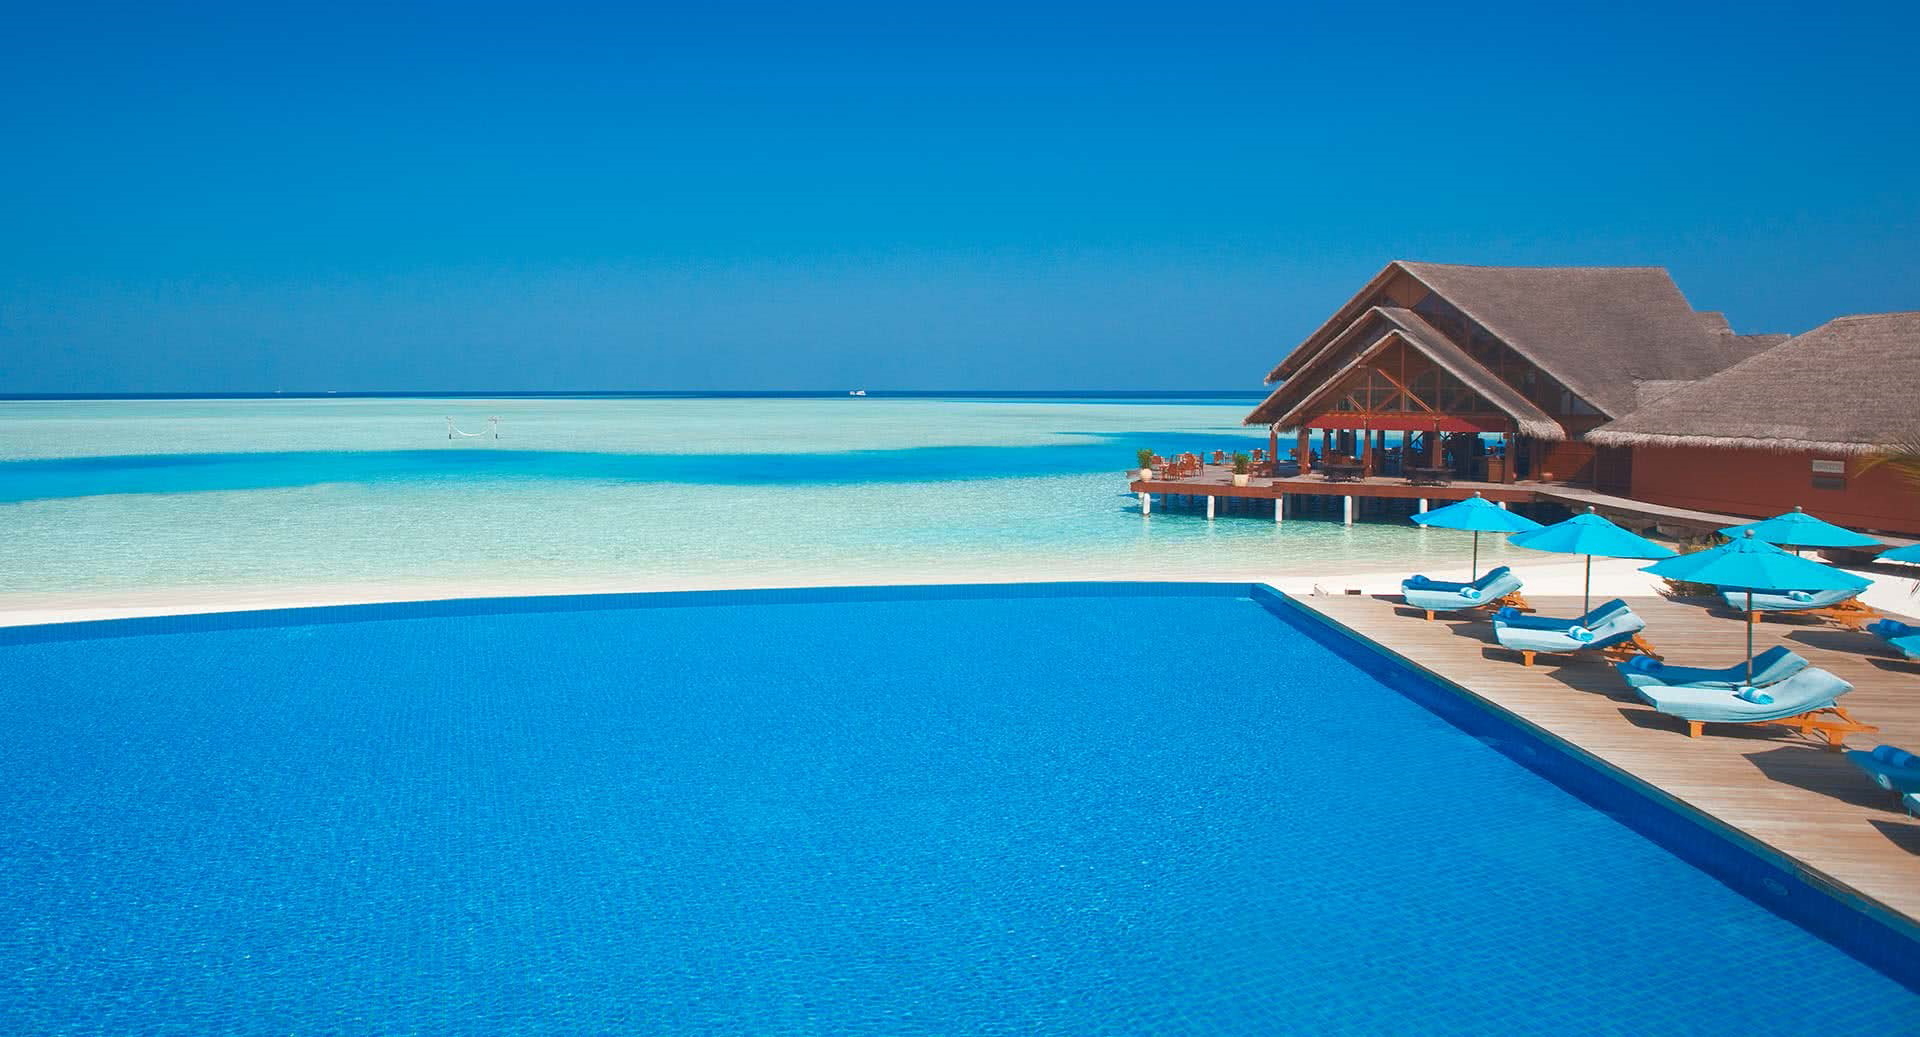 Infinity pool at Anantara Dhigu Maldives. Click to enlarge.